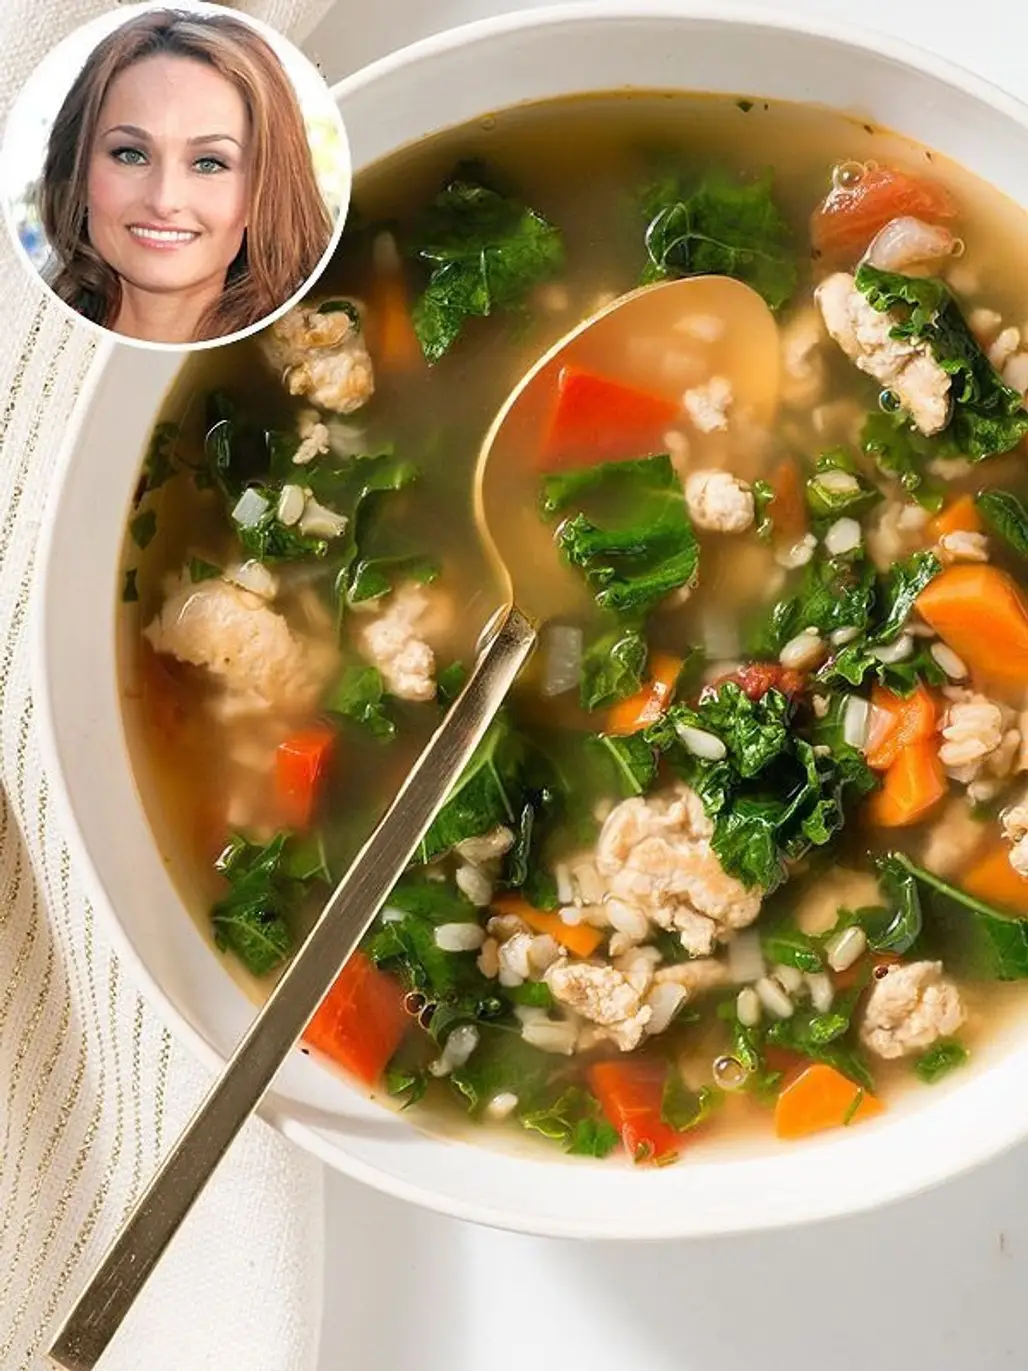 Giada De Laurentiis' Healthy Turkey-kale Soup